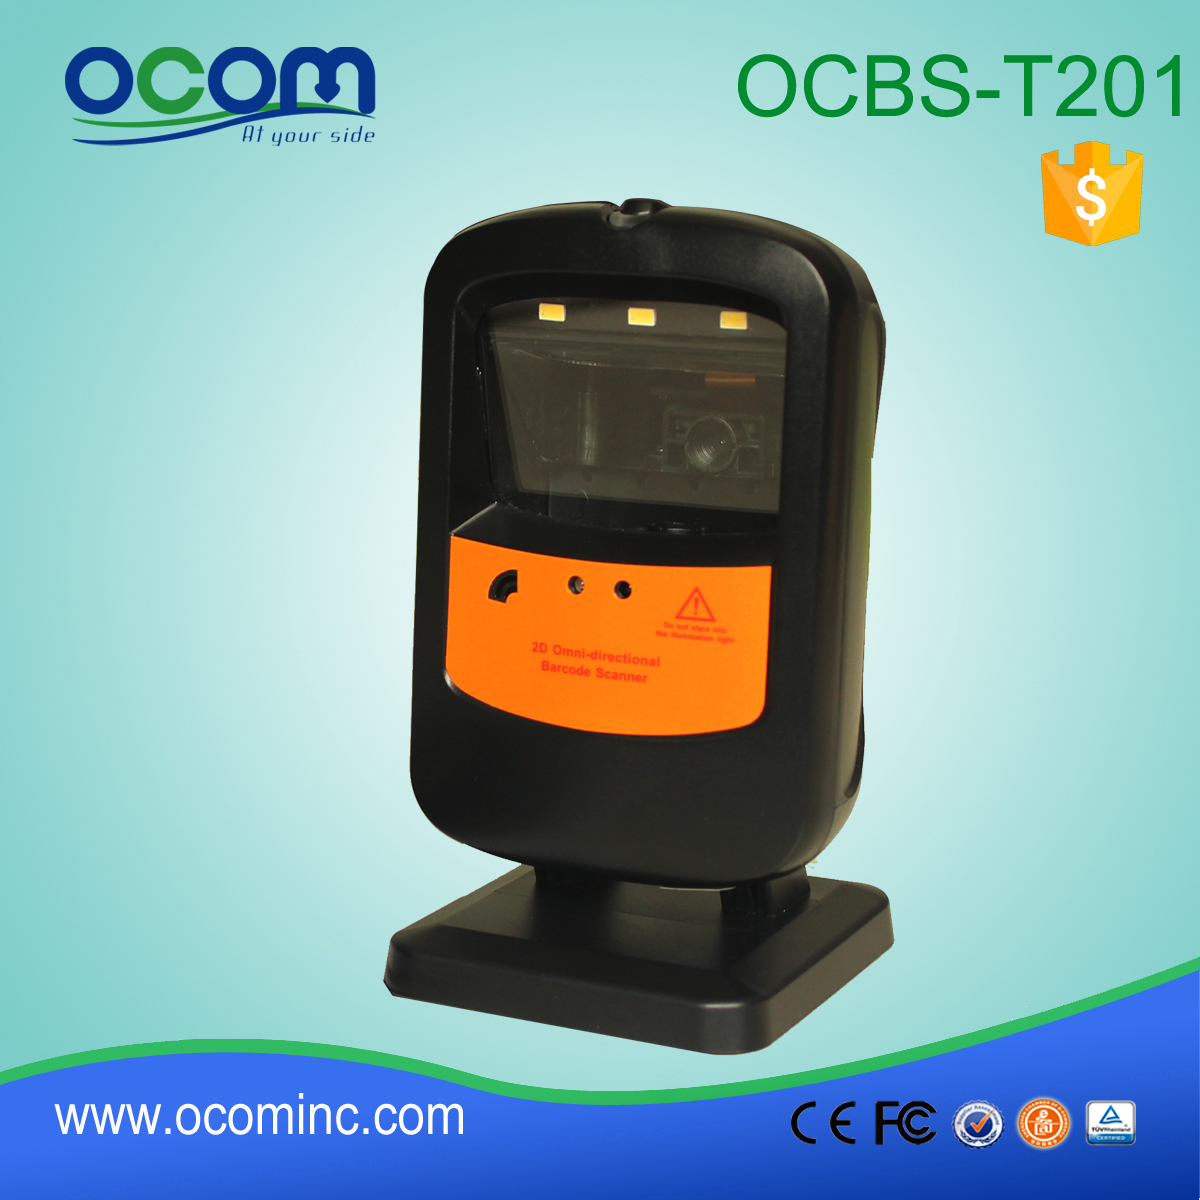 OCBS-T201: Precio barcode scanner de cama plana, un escáner de código de barras de porcelana